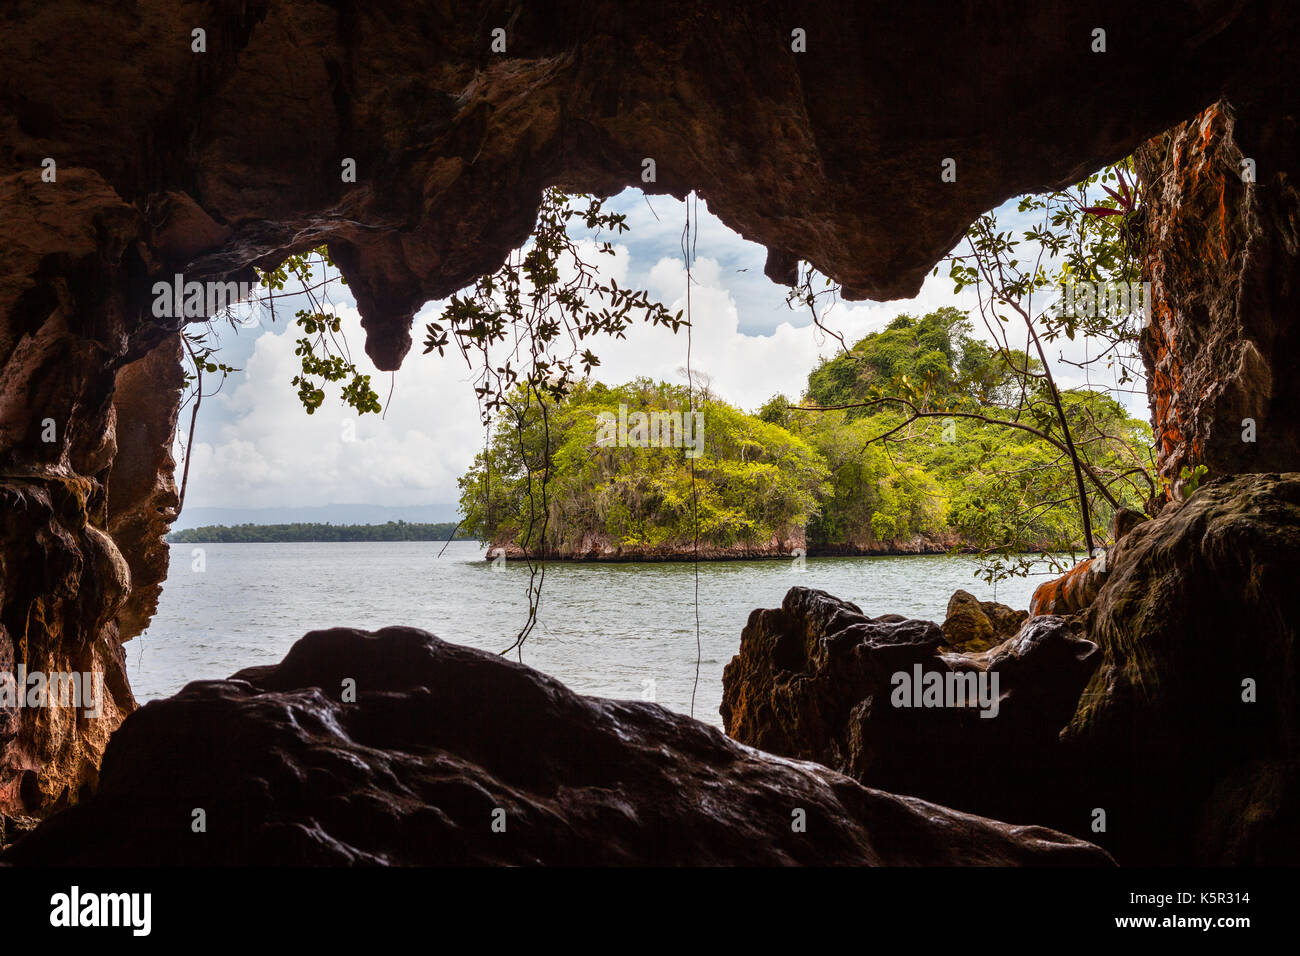 Cave in Parque Nacional de los Haitises, República Dominicana Stock Photo